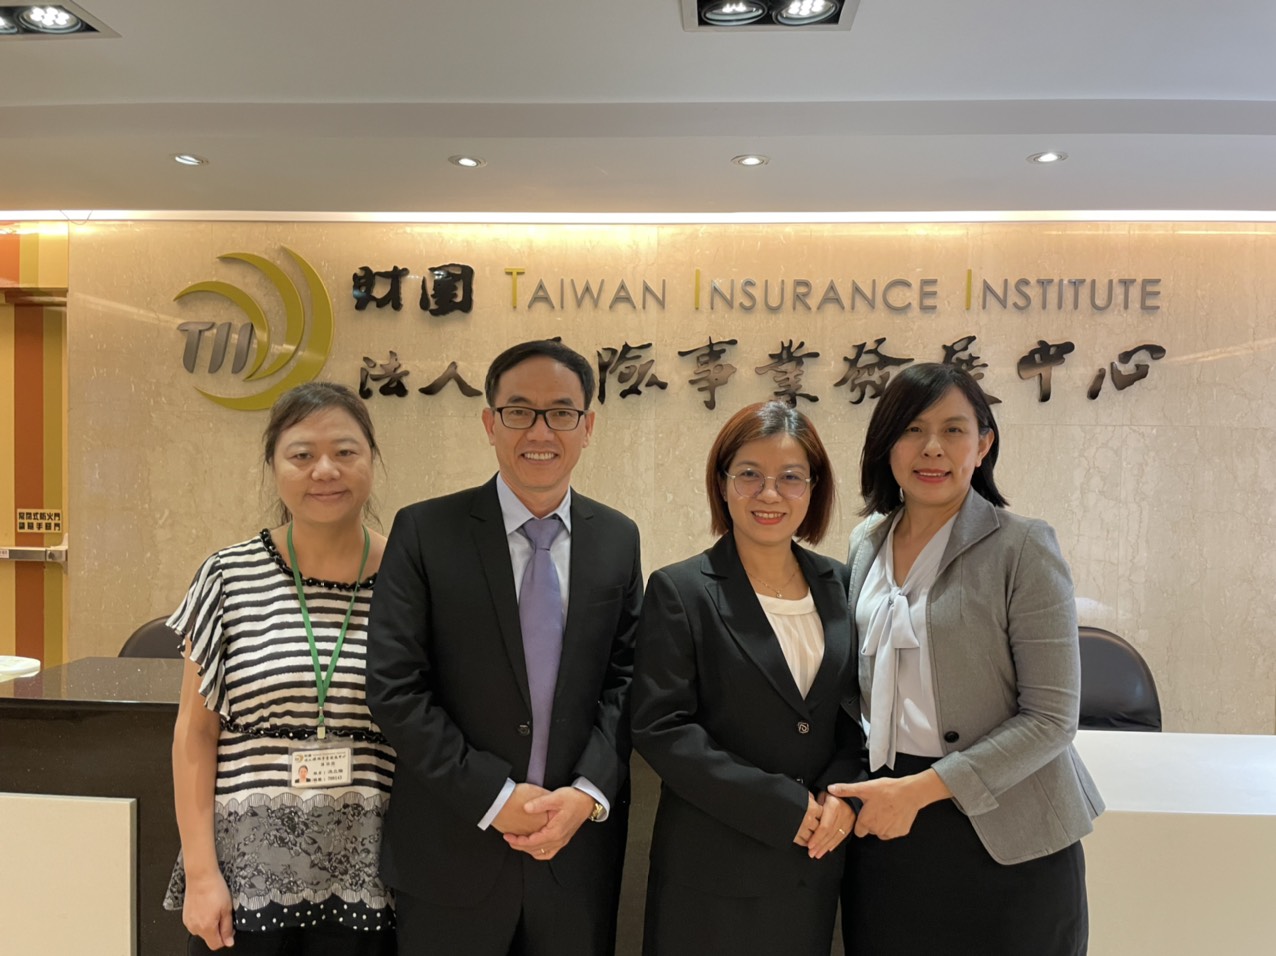 Global Care giới thiệu nền tảng chuyển đổi số bảo hiểm tại Đài Loan - 3